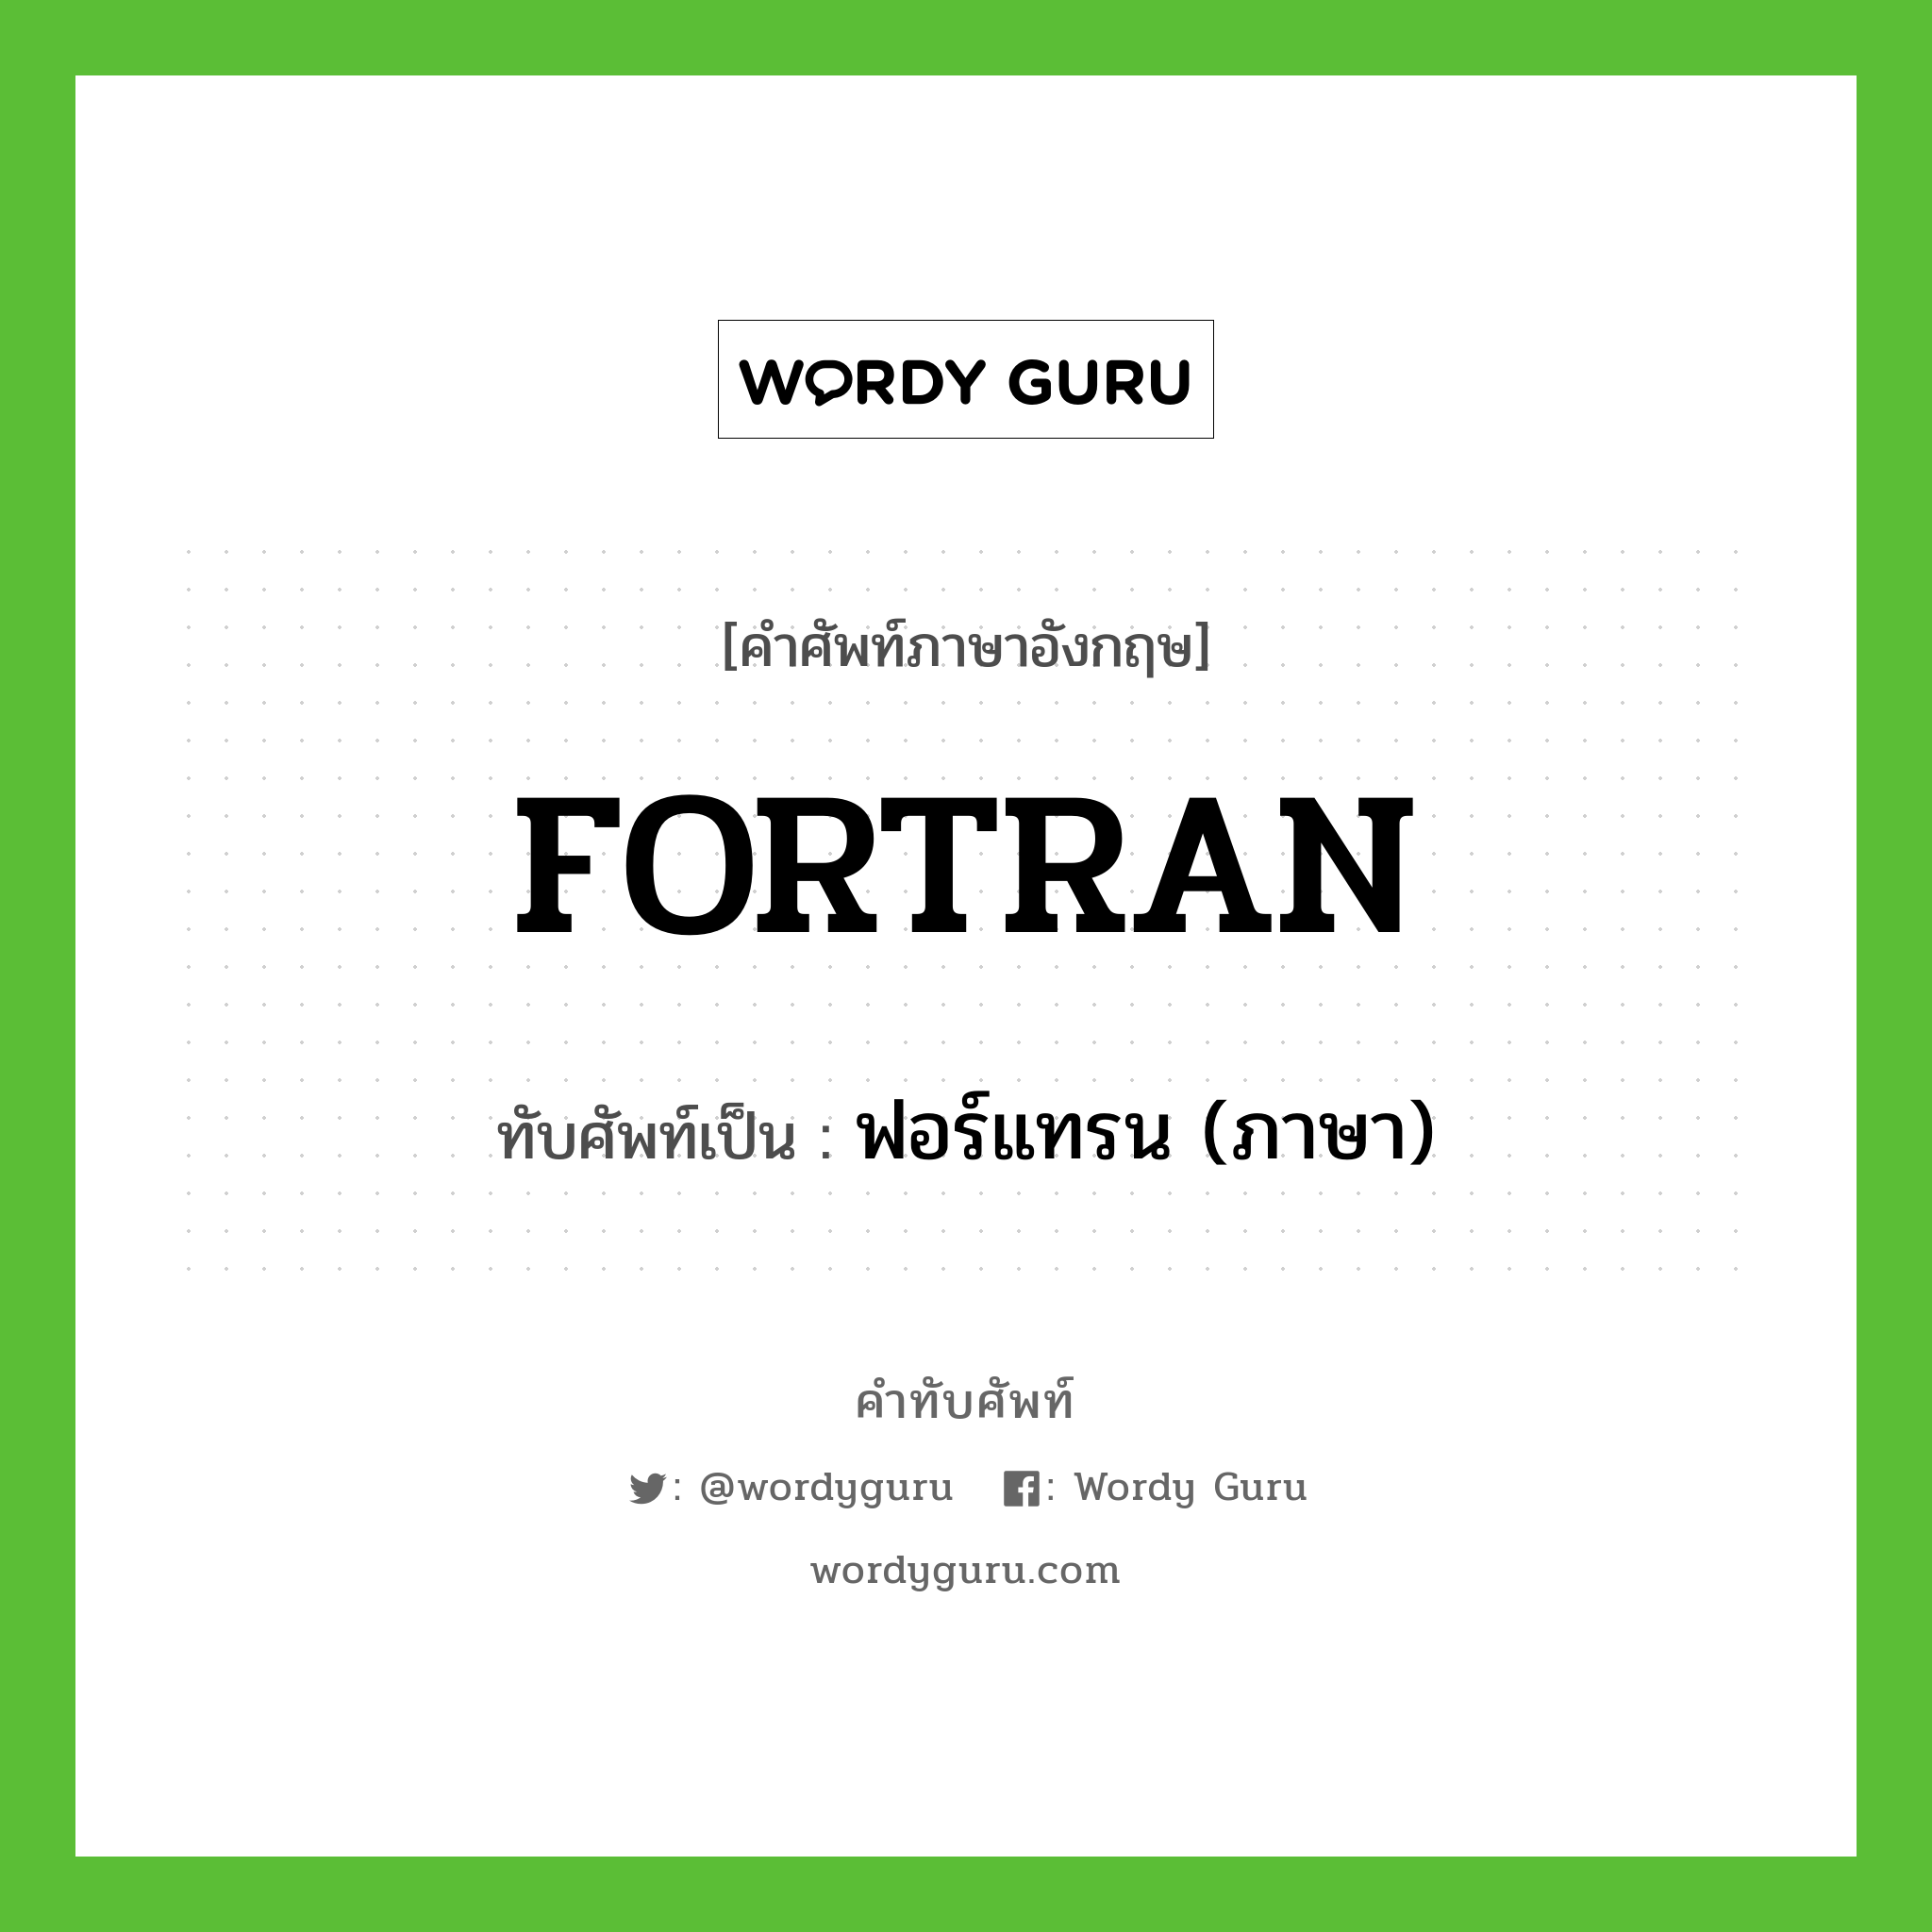 FORTRAN เขียนเป็นคำไทยว่าอะไร?, คำศัพท์ภาษาอังกฤษ FORTRAN ทับศัพท์เป็น ฟอร์แทรน (ภาษา)